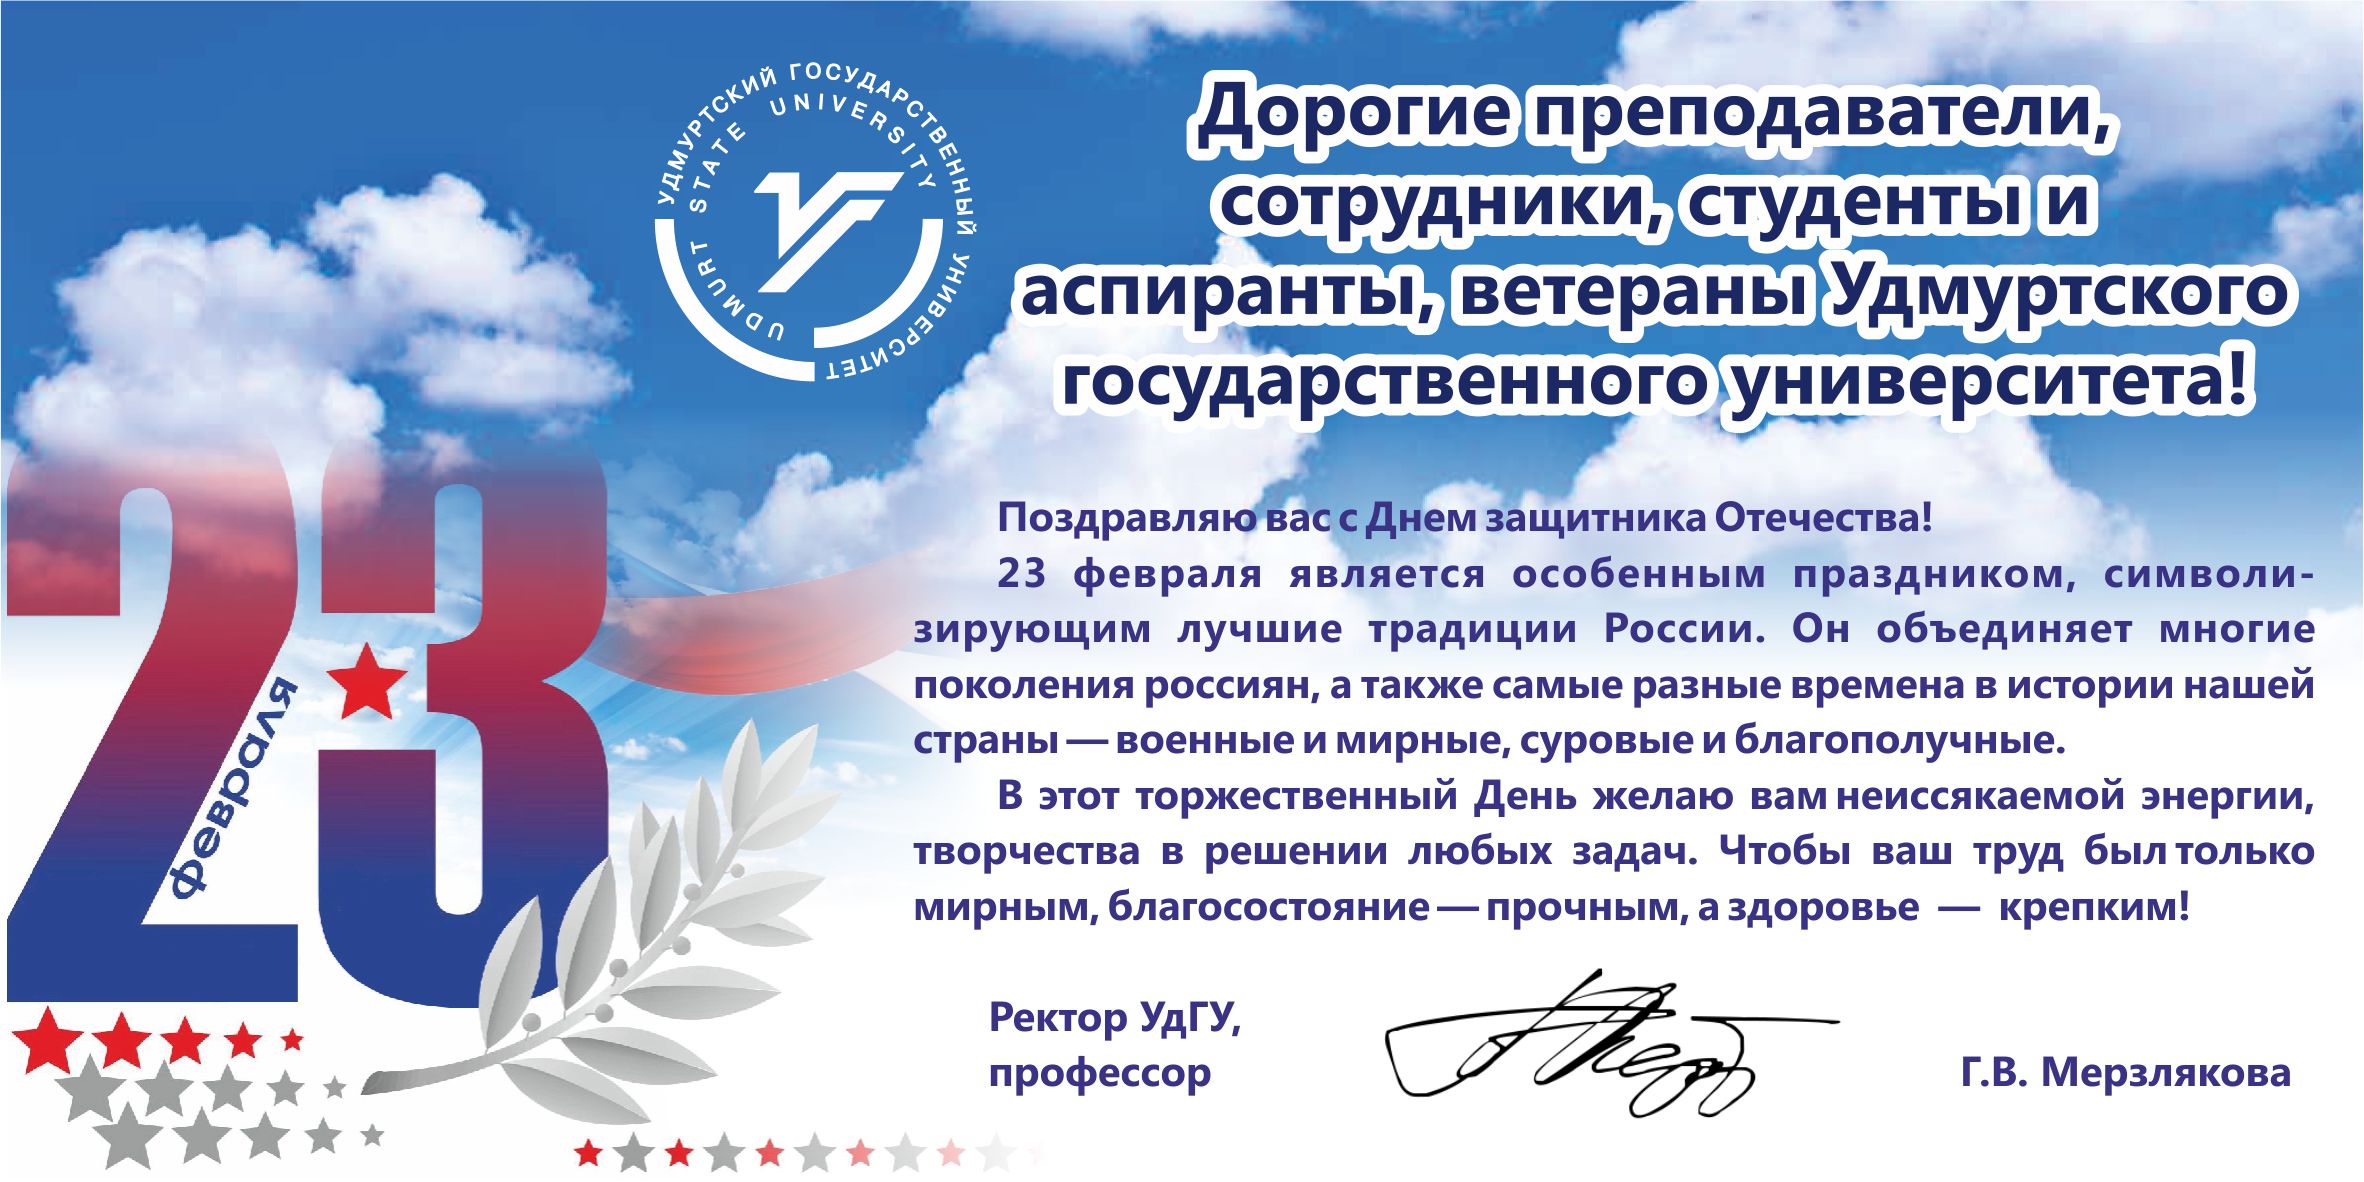 Поздравление с Днем защитника Отечества от ректора УдГУ Г. В. Мерзляковой